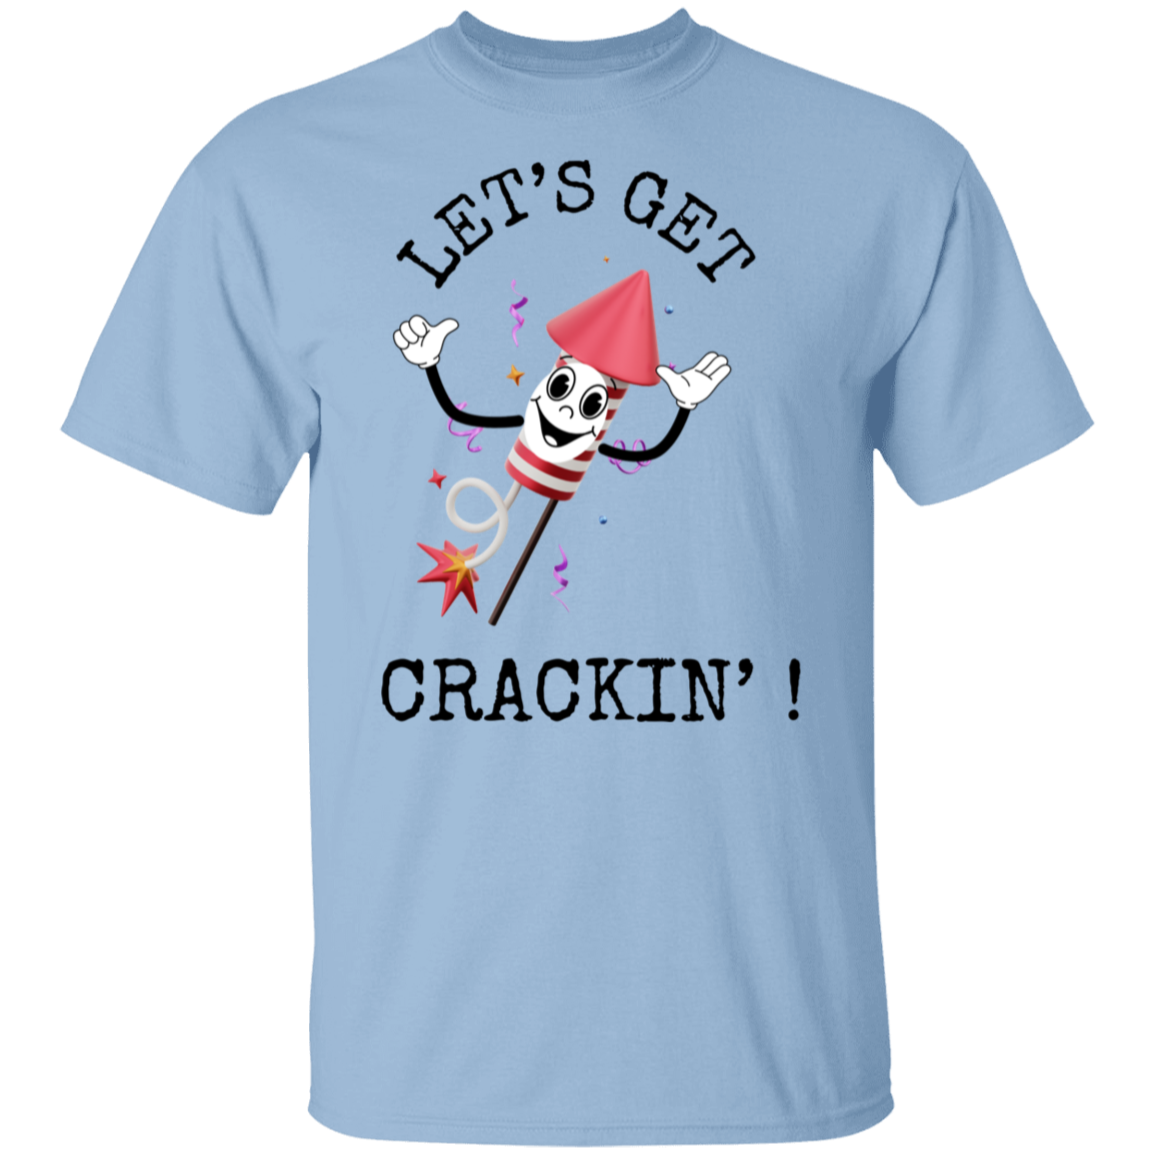 Let's Get Crackin! T-shirt 5.3 oz.